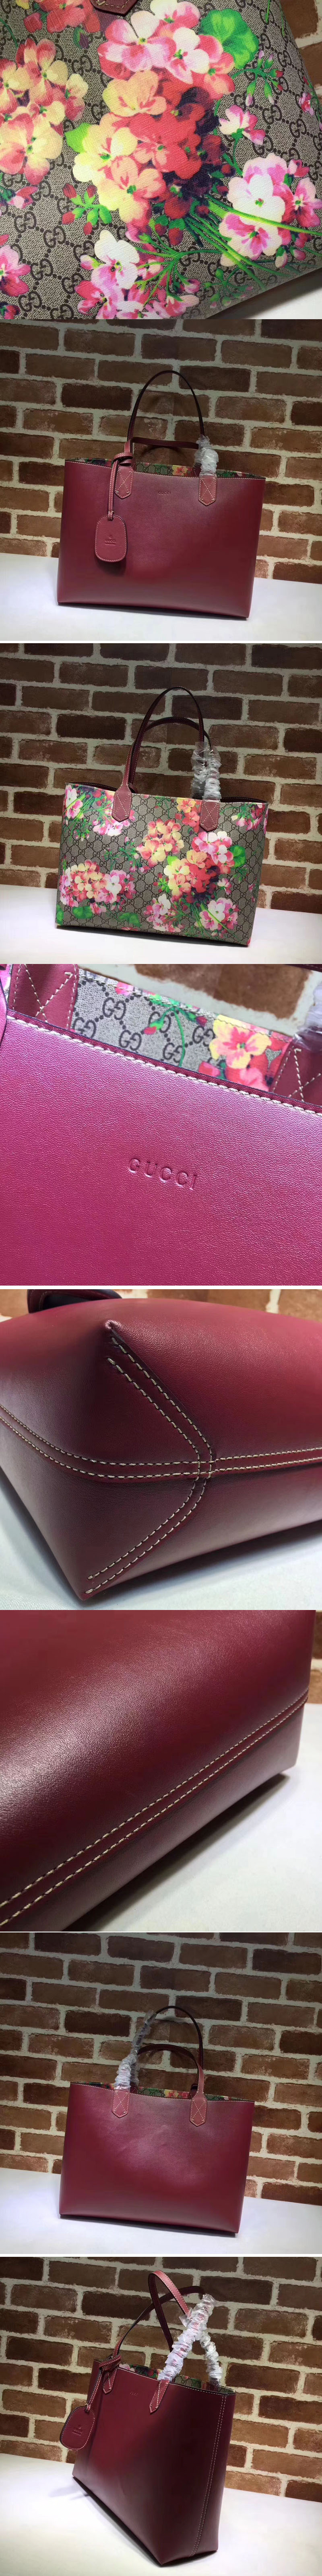 Replica Gucci Bags